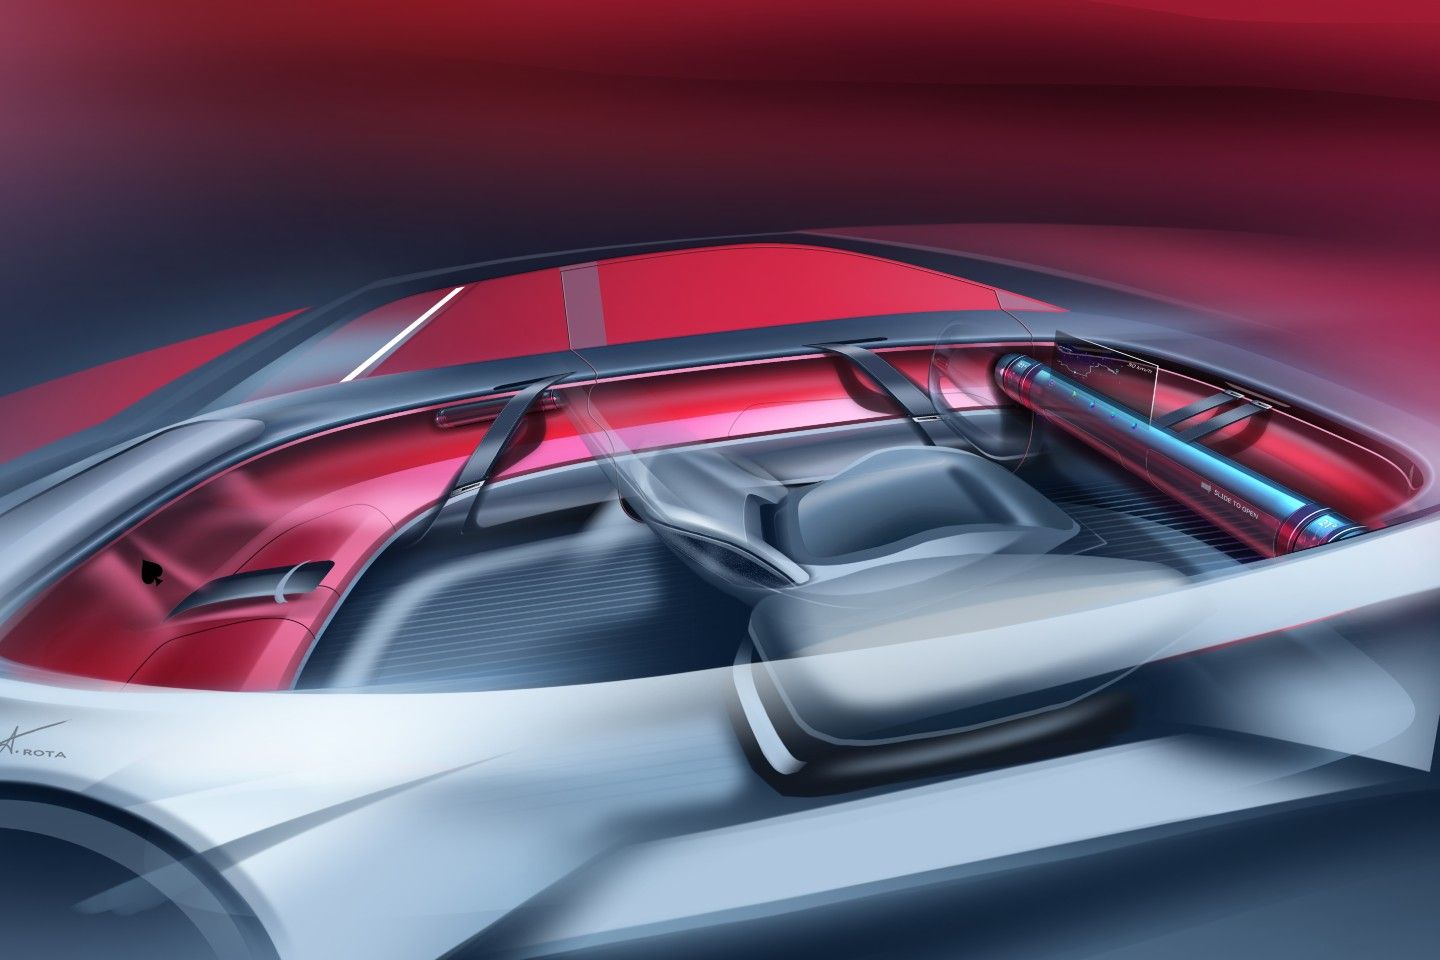 Audi unveils a shape-shifting concept car